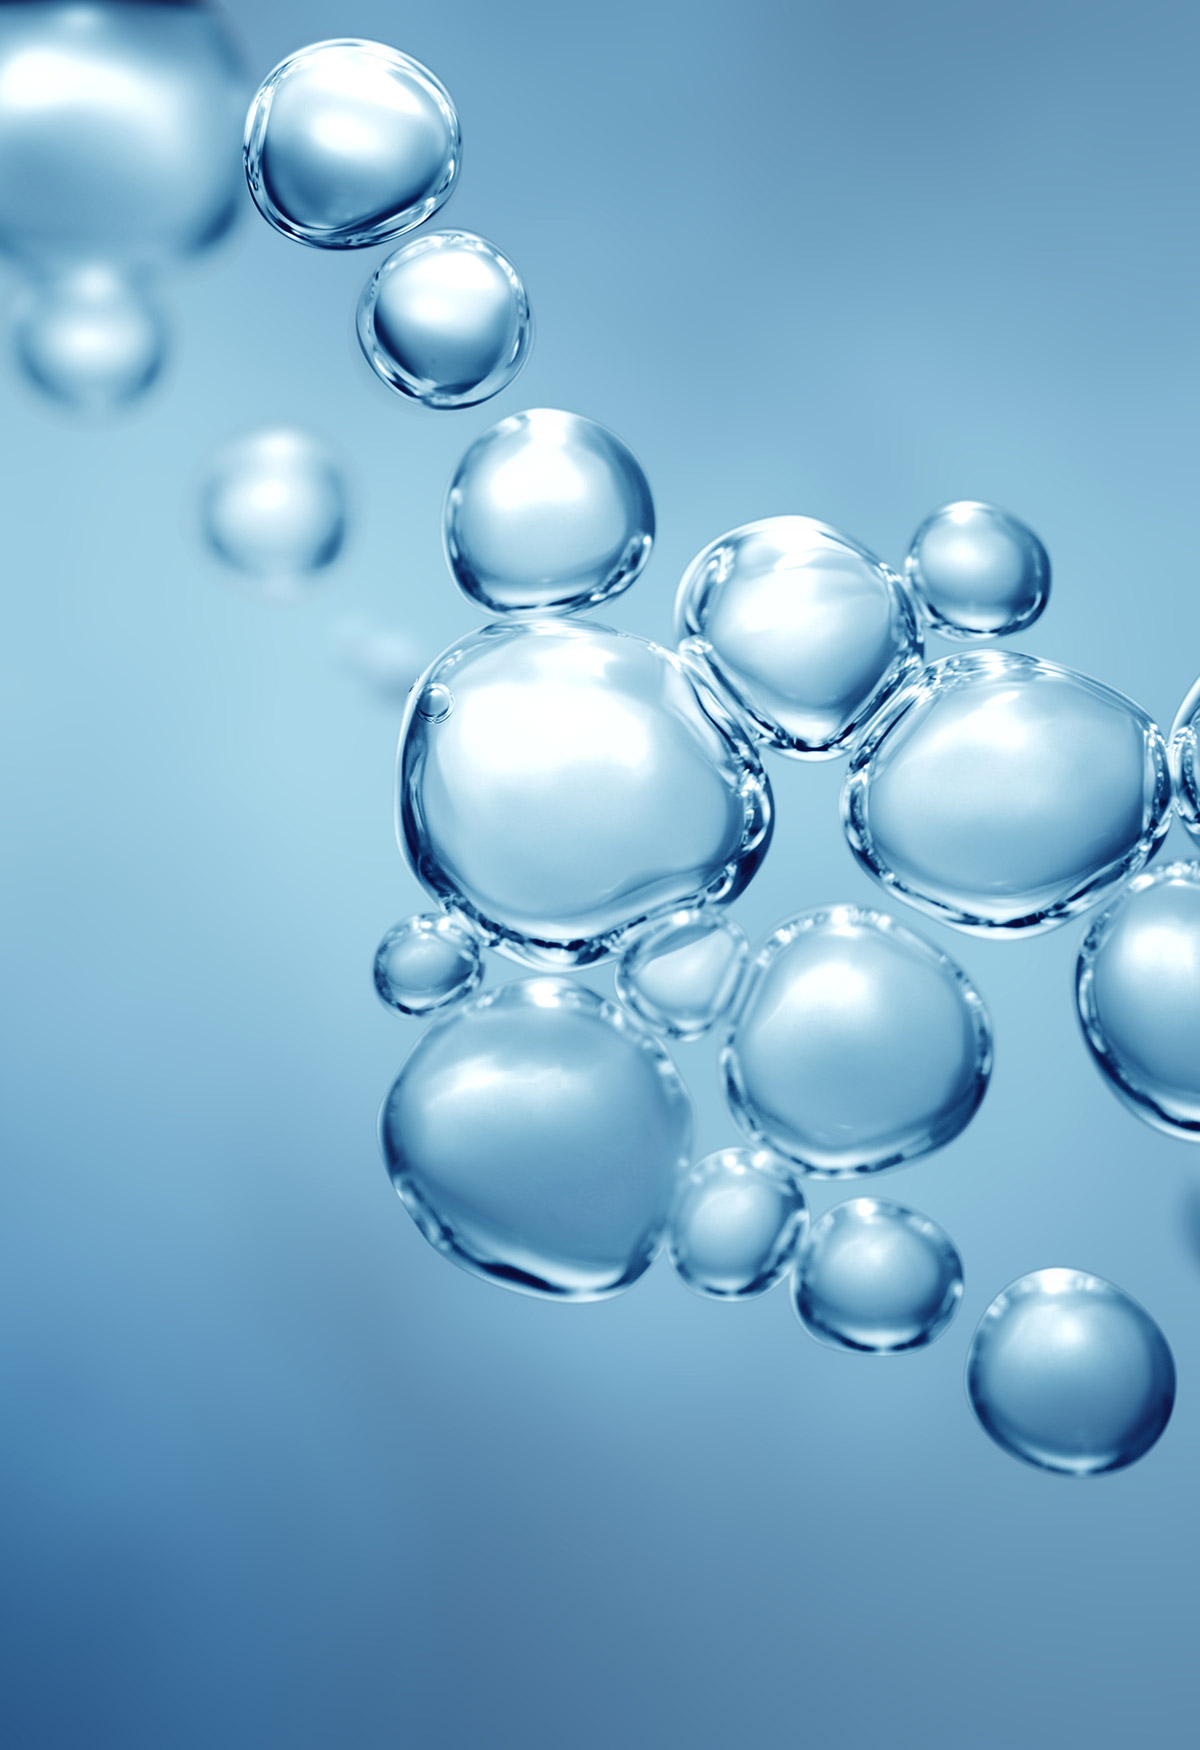 Makroaufnahme von Wasserstoffblasen, die den Begriff von sauberer Energie symbolisieren.